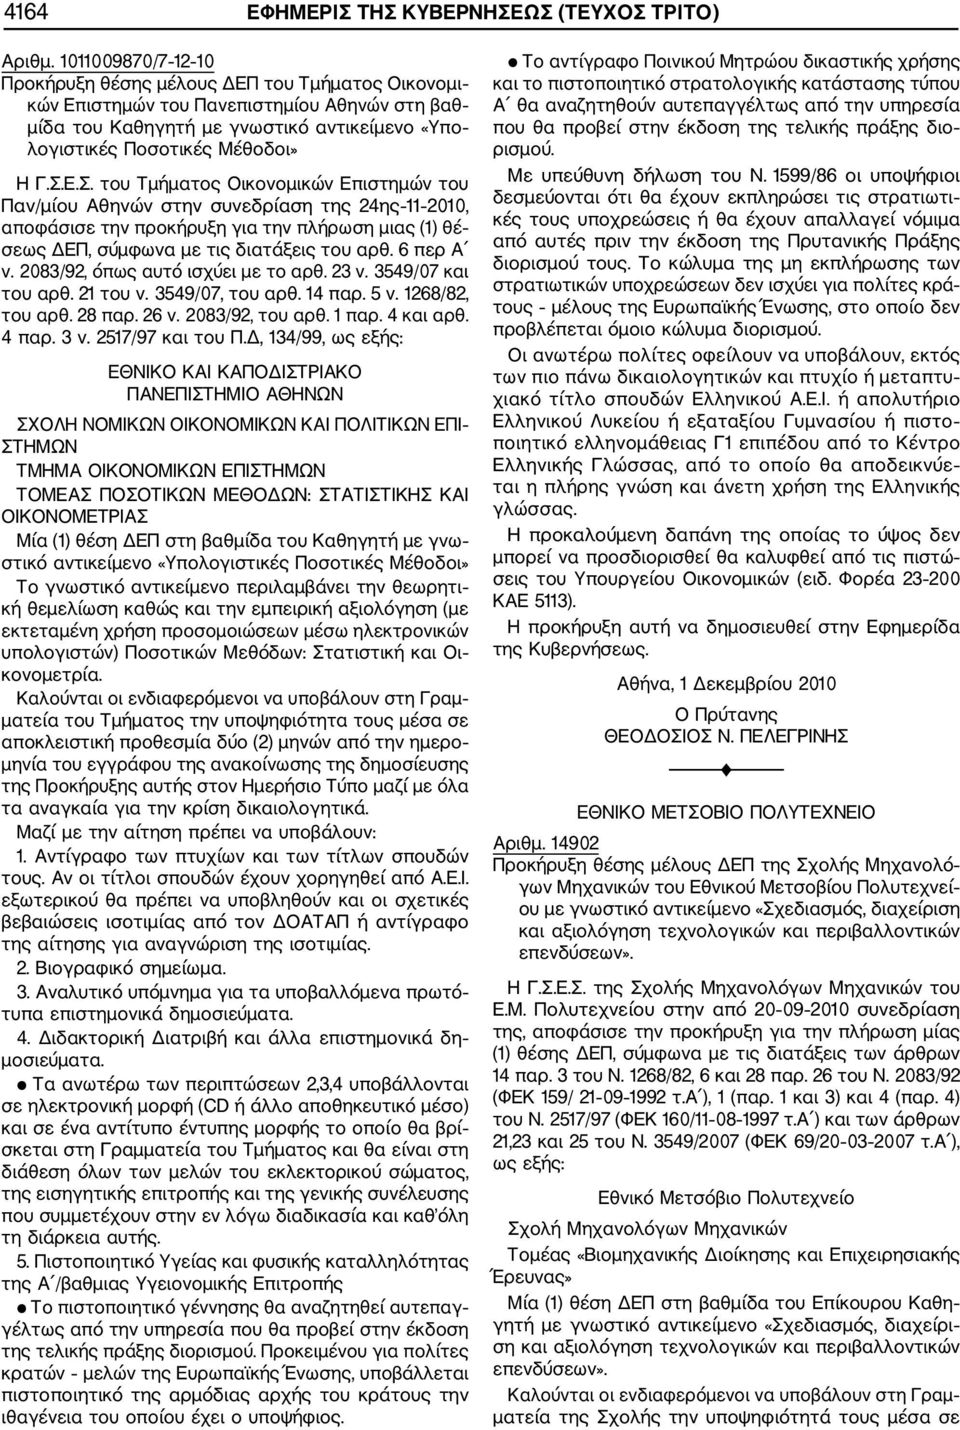 Ε.Σ. του Τμήματος Οικονομικών Επιστημών του Παν/μίου Αθηνών στην συνεδρίαση της 24ης 11 2010, αποφάσισε την προκήρυξη για την πλήρωση μιας (1) θέ σεως ΔΕΠ, σύμφωνα με τις διατάξεις του αρθ. 6 περ Α ν.